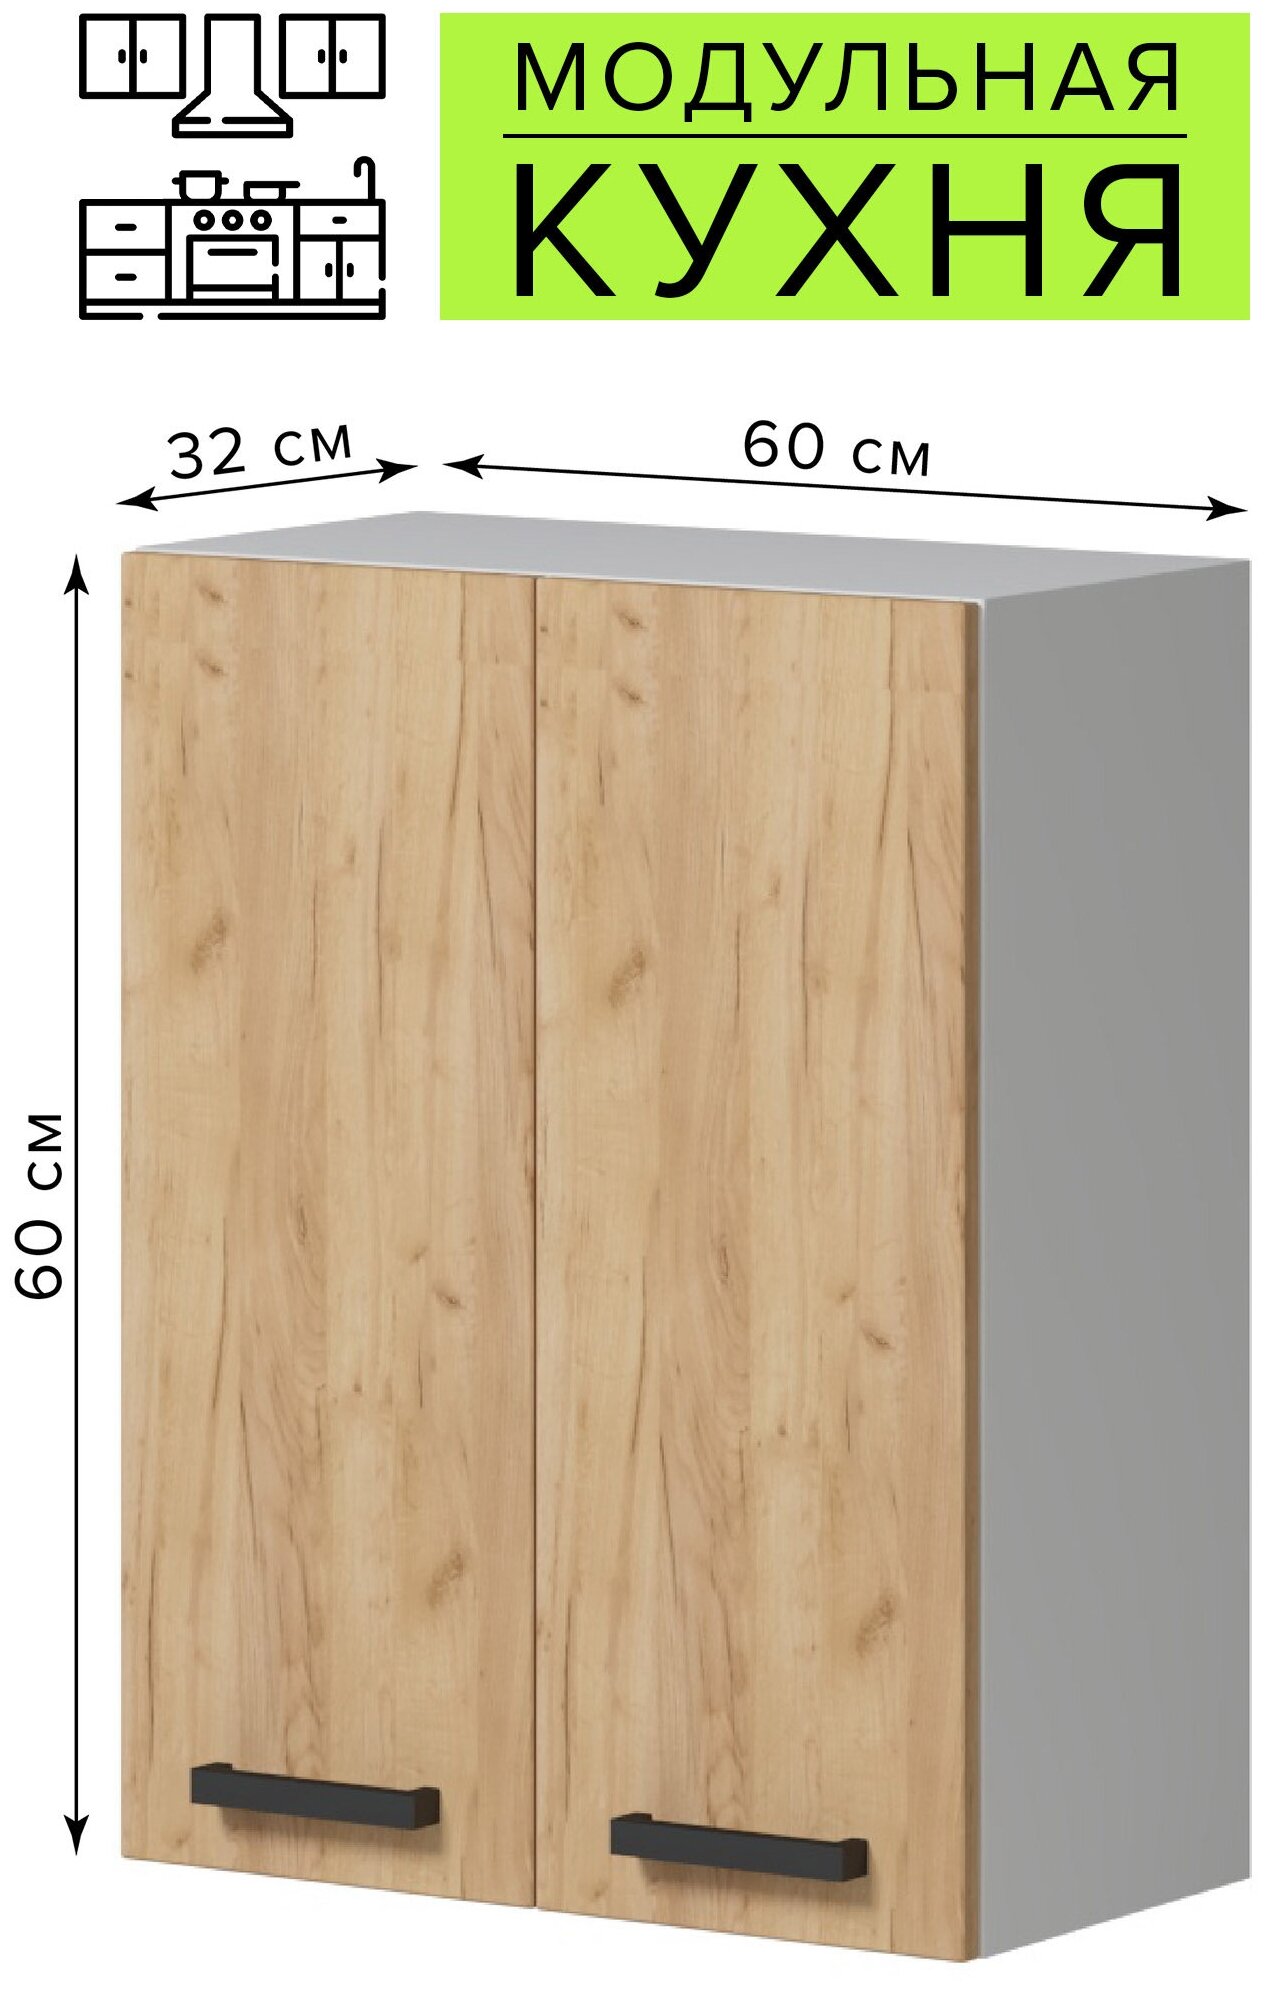 Шкаф навесной кухонный настенный 60х60х32 см, дуб золотой, с полкой, модульная кухня Genesis - фотография № 1